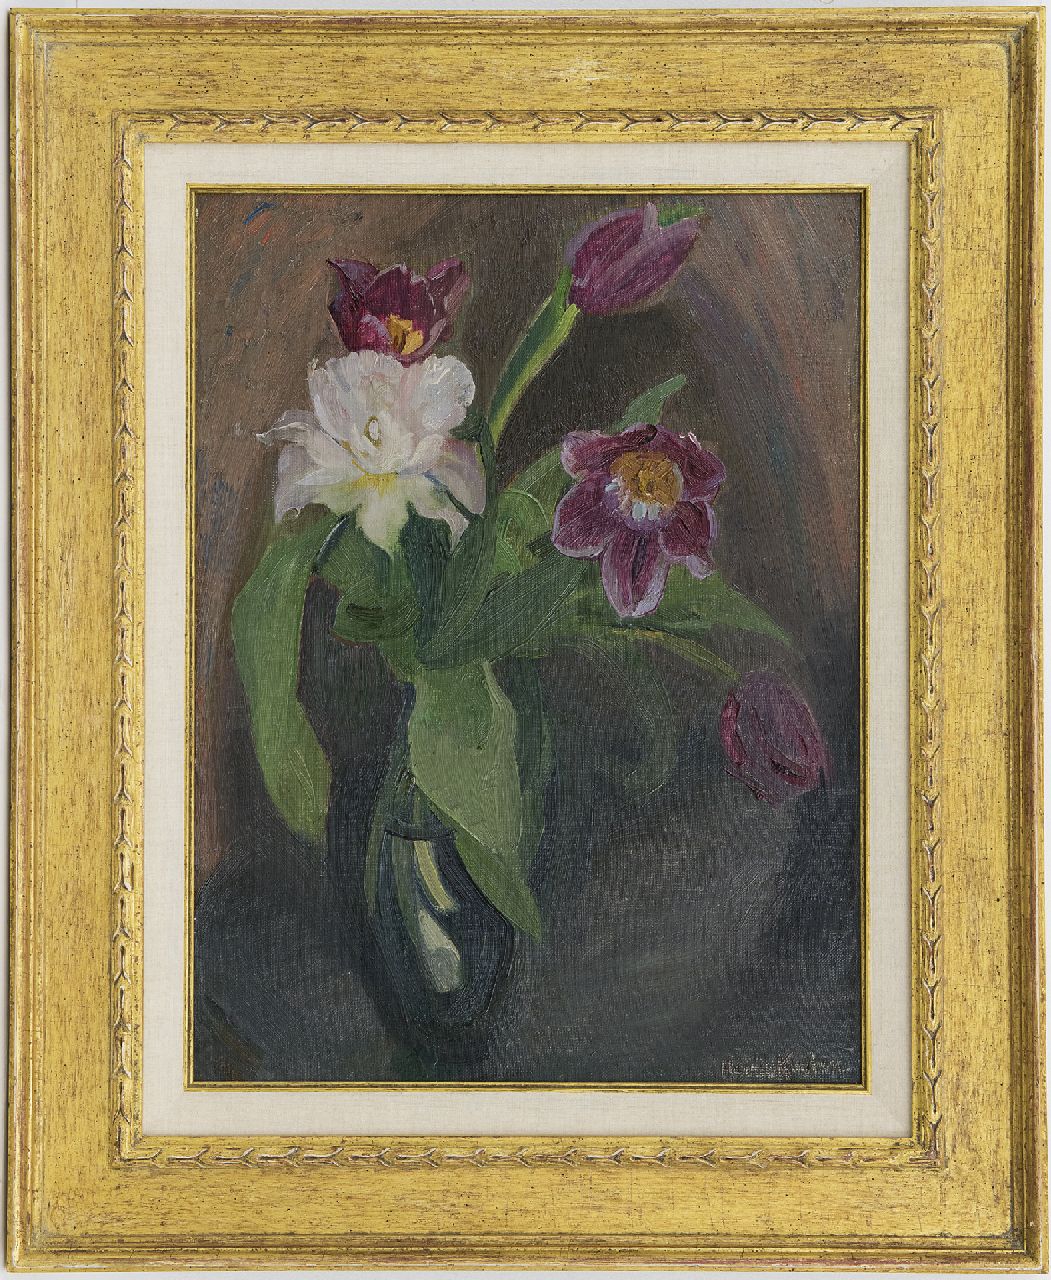 Kuijten H.J.  | Henricus Johannes 'Harrie' Kuijten | Schilderijen te koop aangeboden | Tulpen, olieverf op doek 50,1 x 36,3 cm, gesigneerd rechtsonder